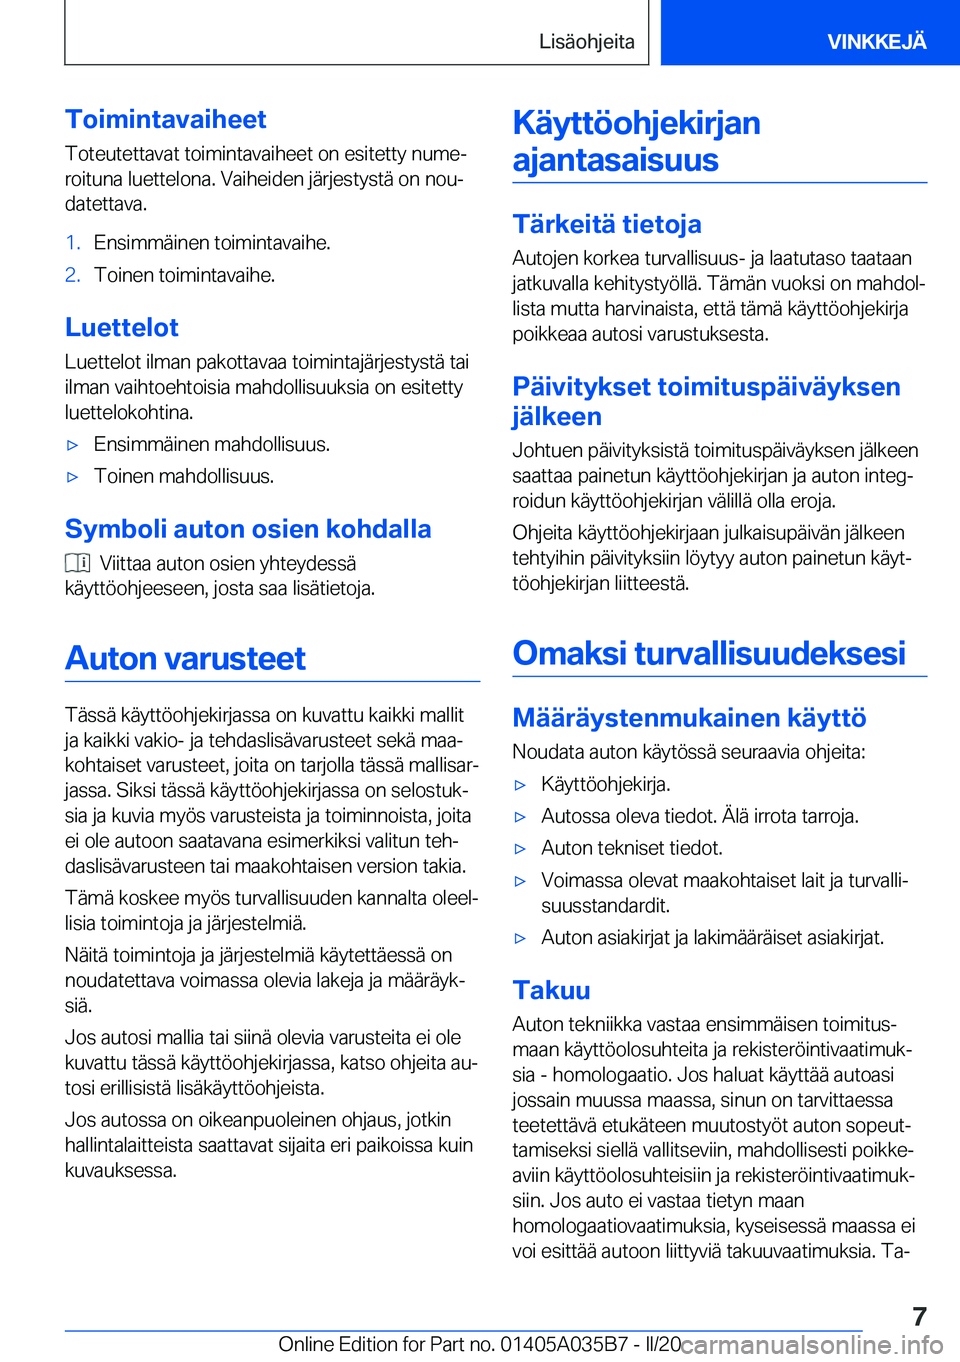 BMW X4 2020  Omistajan Käsikirja (in Finnish) �T�o�i�m�i�n�t�a�v�a�i�h�e�e�t�T�o�t�e�u�t�e�t�t�a�v�a�t��t�o�i�m�i�n�t�a�v�a�i�h�e�e�t��o�n��e�s�i�t�e�t�t�y��n�u�m�ej
�r�o�i�t�u�n�a��l�u�e�t�t�e�l�o�n�a�.��V�a�i�h�e�i�d�e�n��j�